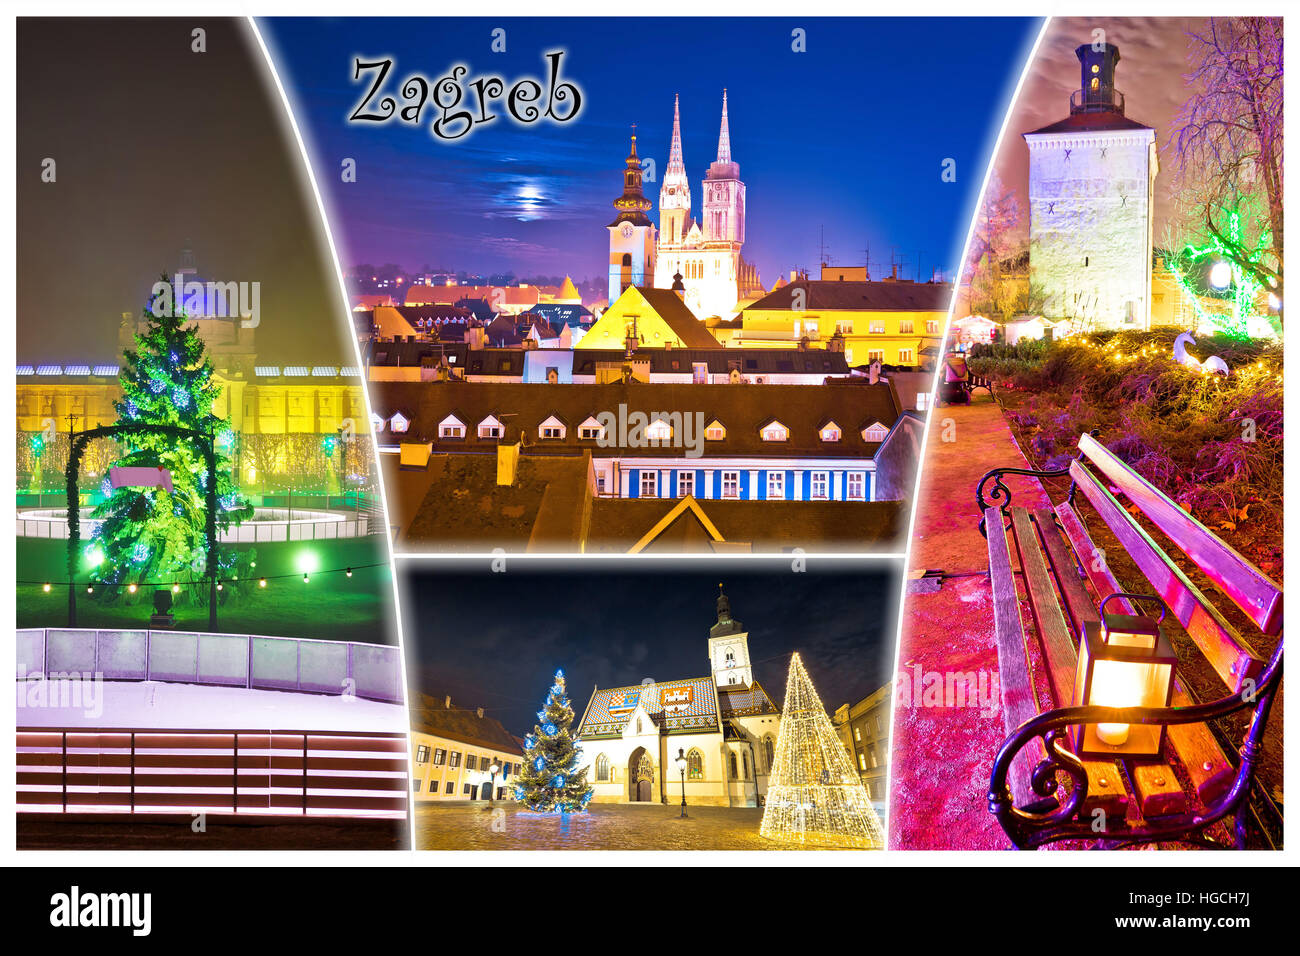 Stadt Zagreb Advent Abend Postkarte, Hauptstadt von Kroatien Collage mit label Stockfoto